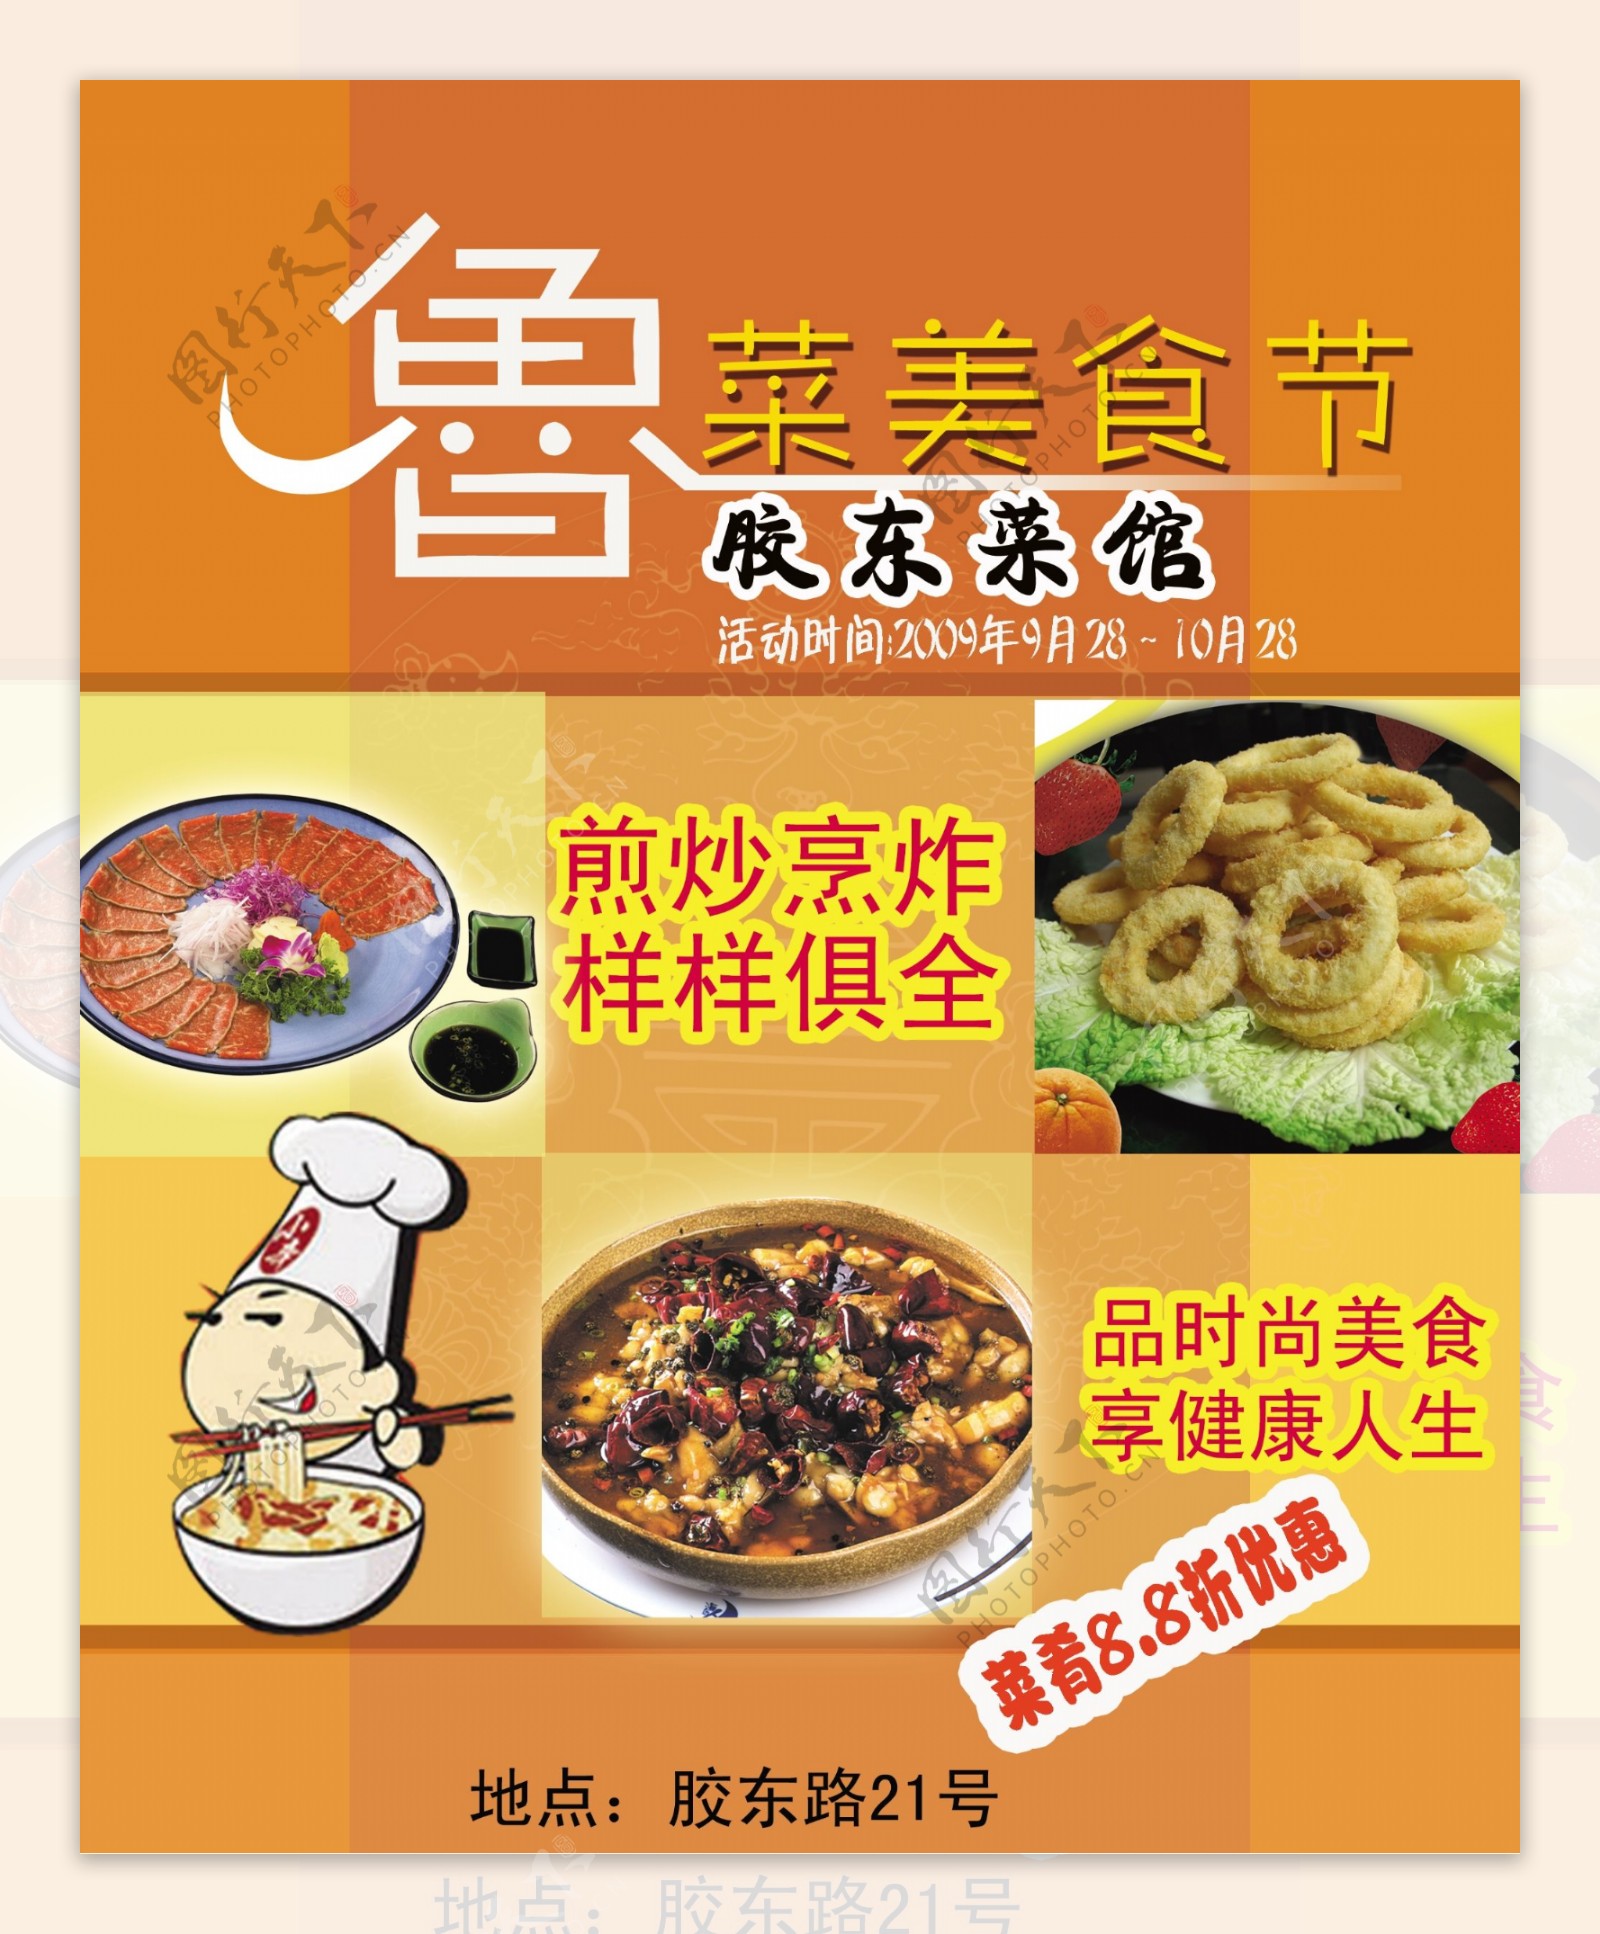 鲁菜美食节宣传海报